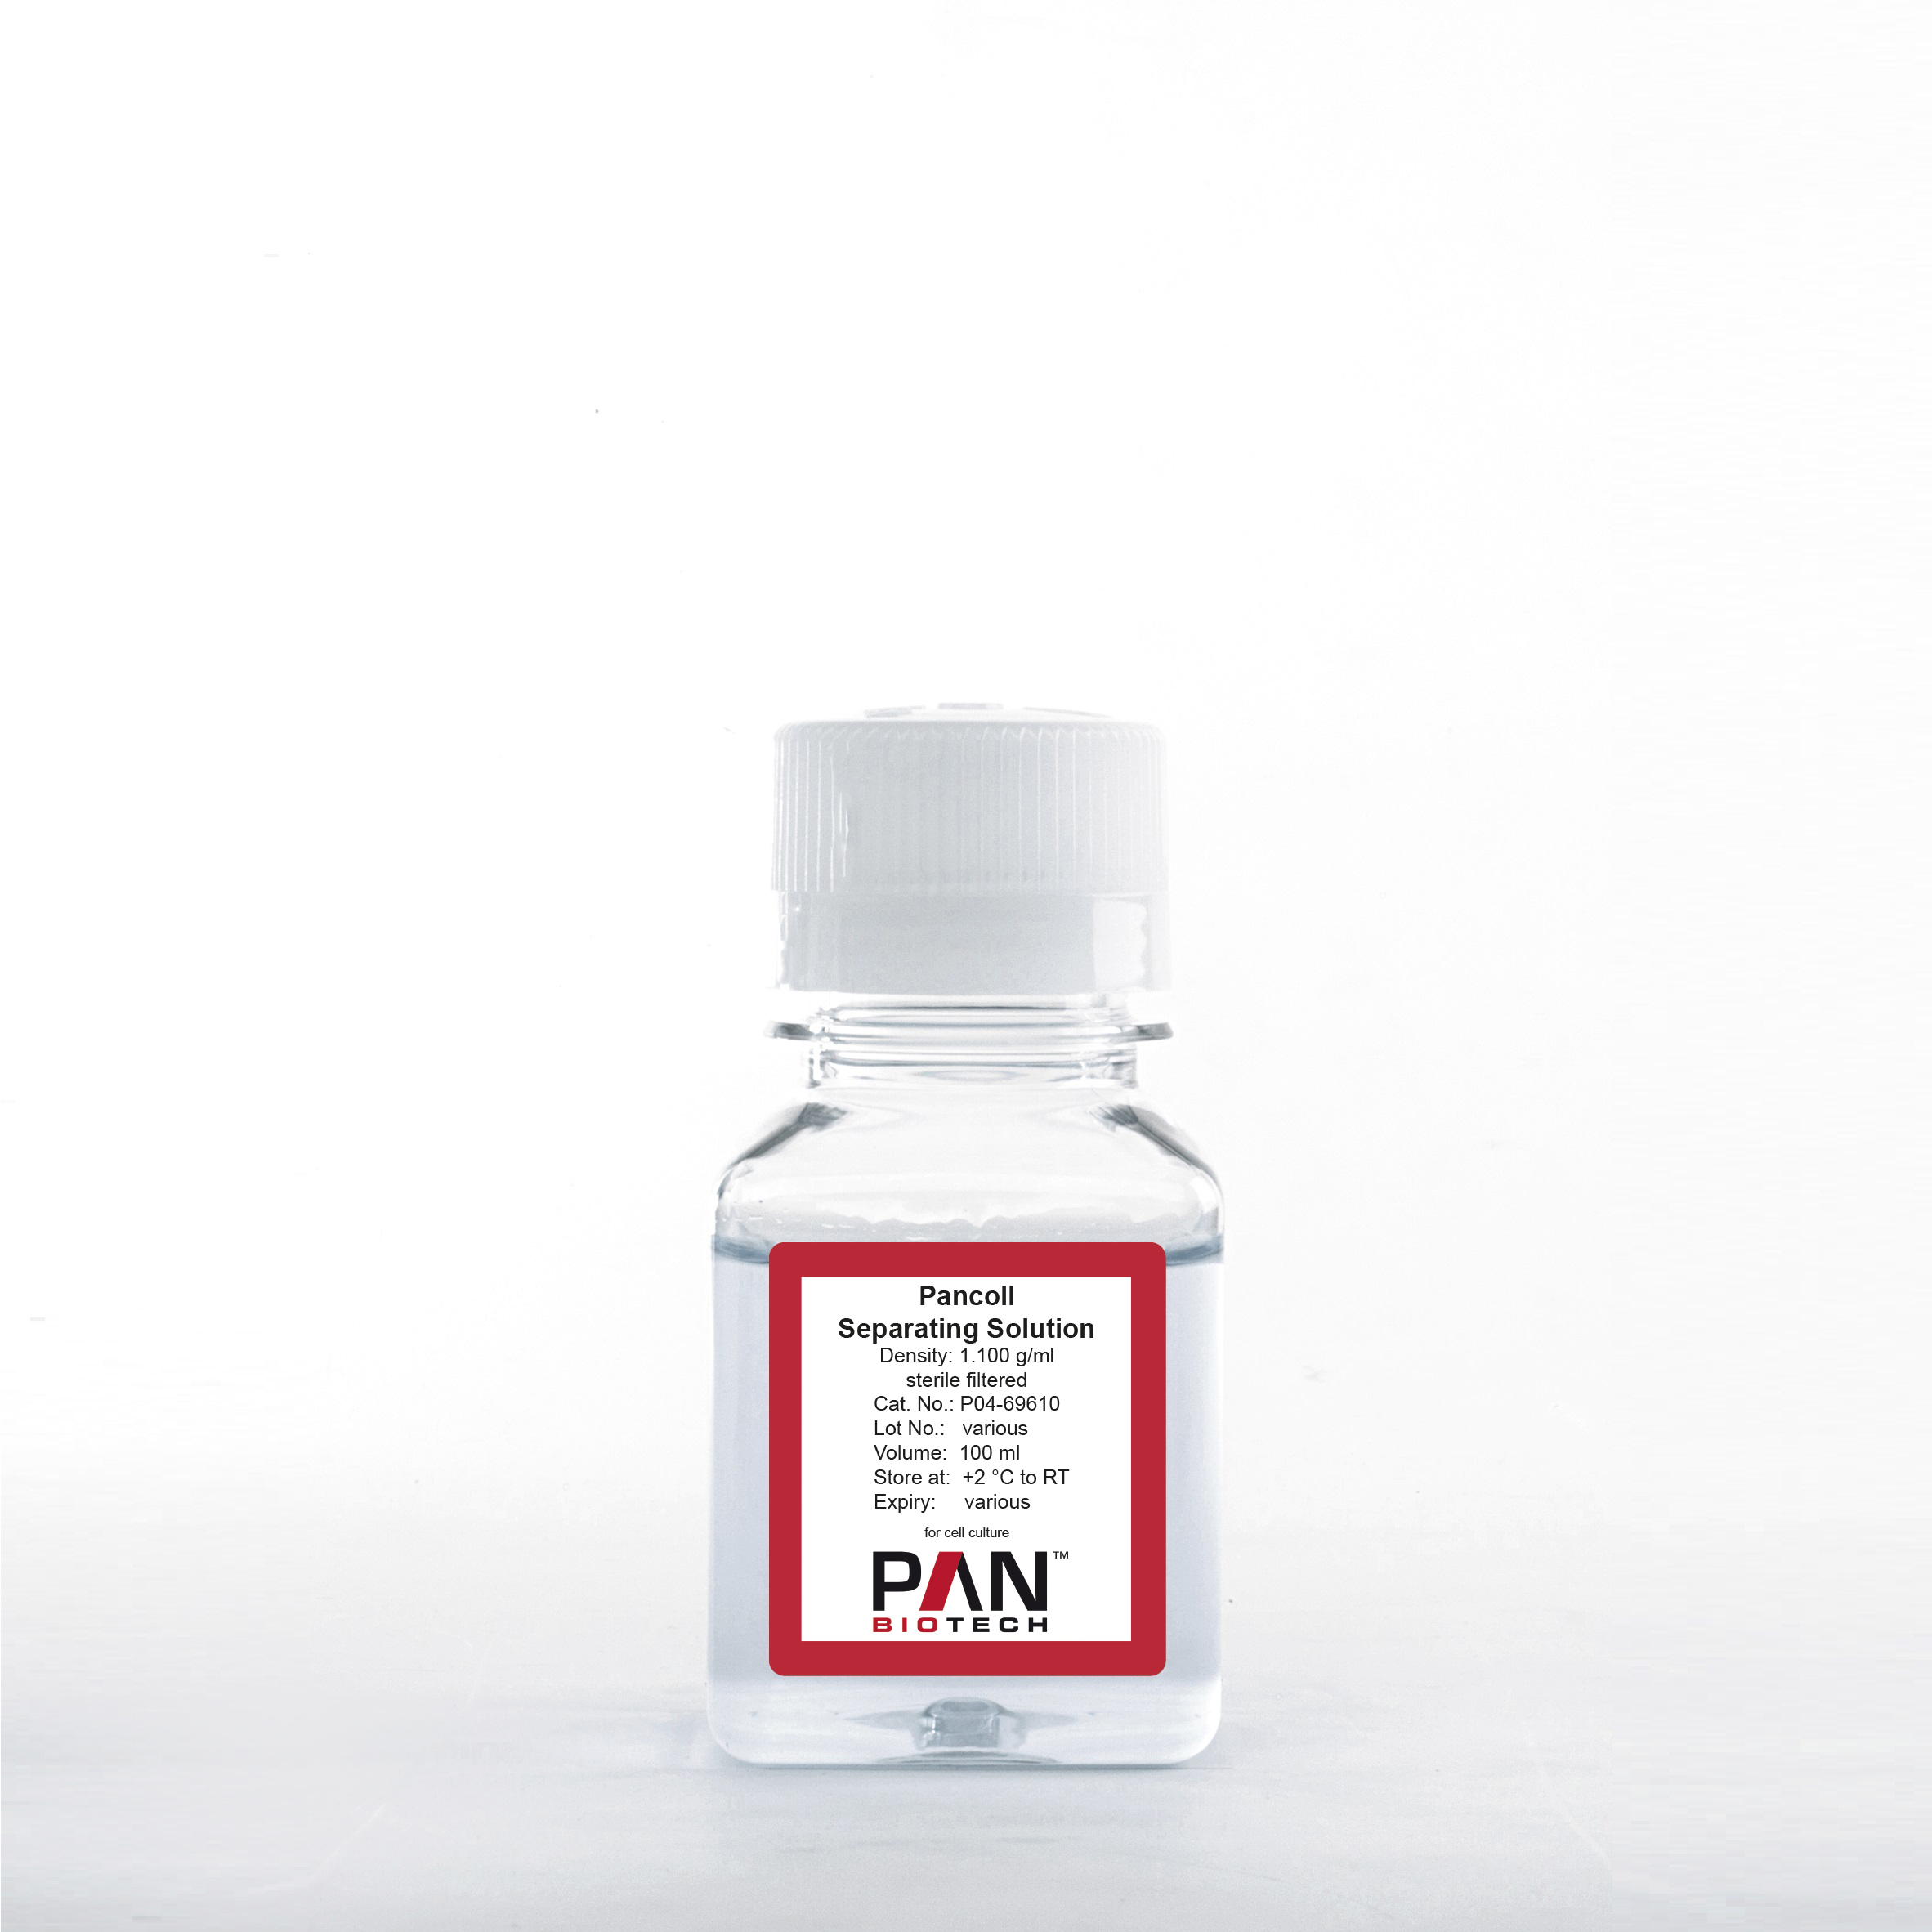 Pancoll human, Separating Solution, Density: 1.100 g/ml